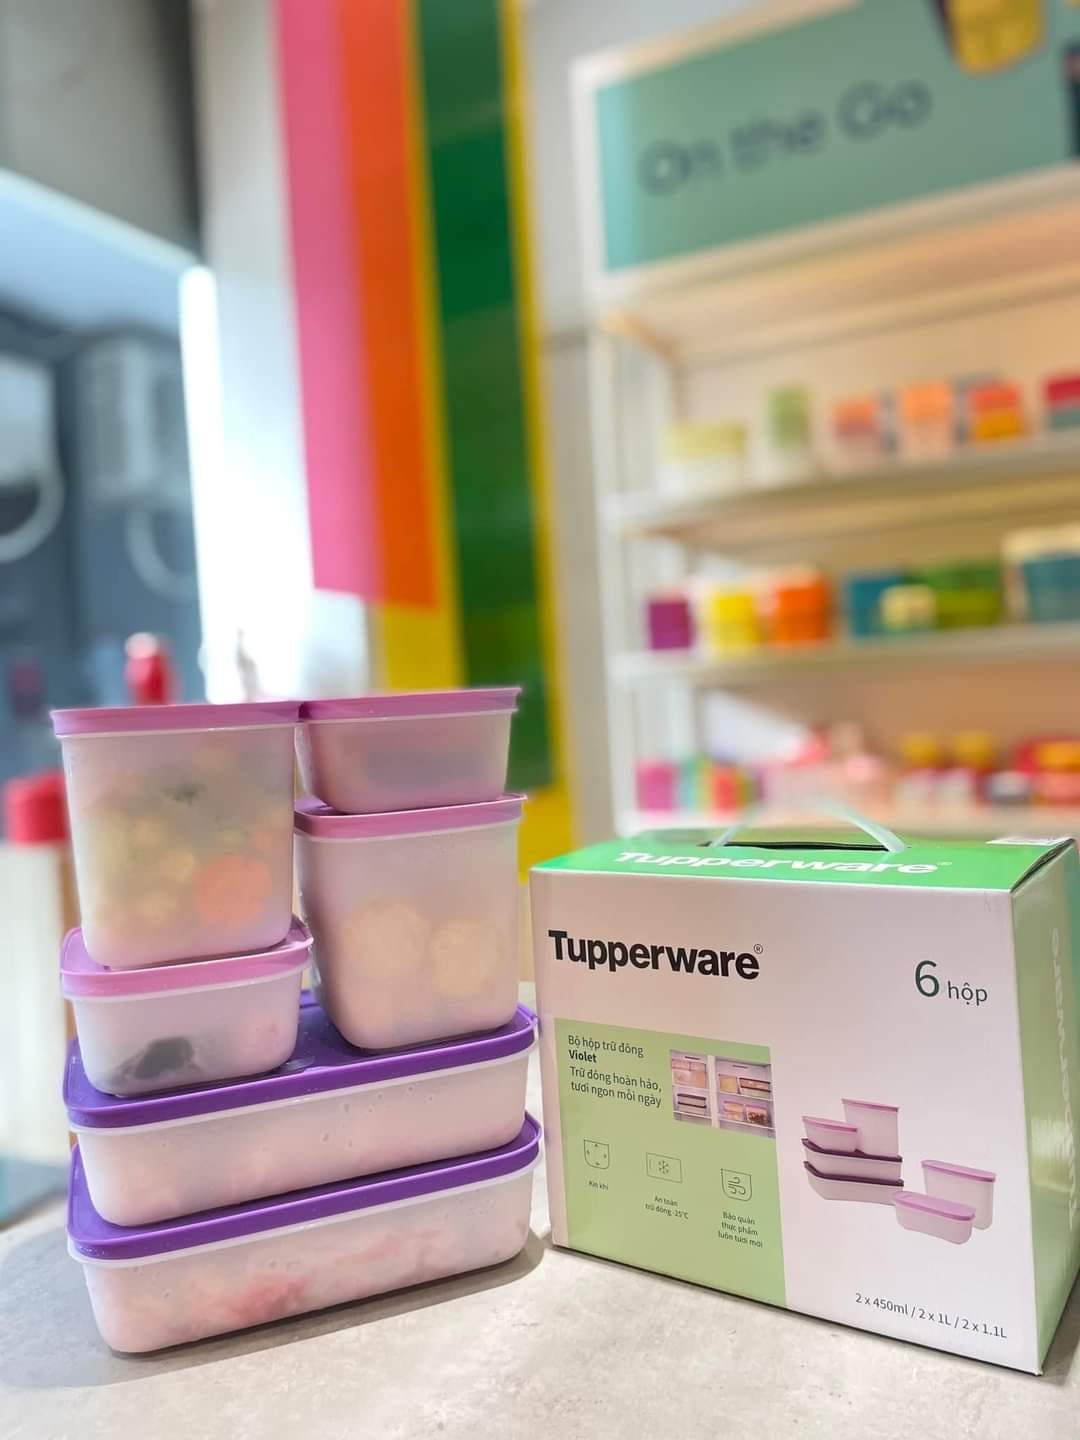 Bộ Hộp Trữ Đông thế hệ II Violet  (set 6 hộp) mẫu mới nhất của Tupperware, nhựa dẻo, dày, kích thước đa dạng